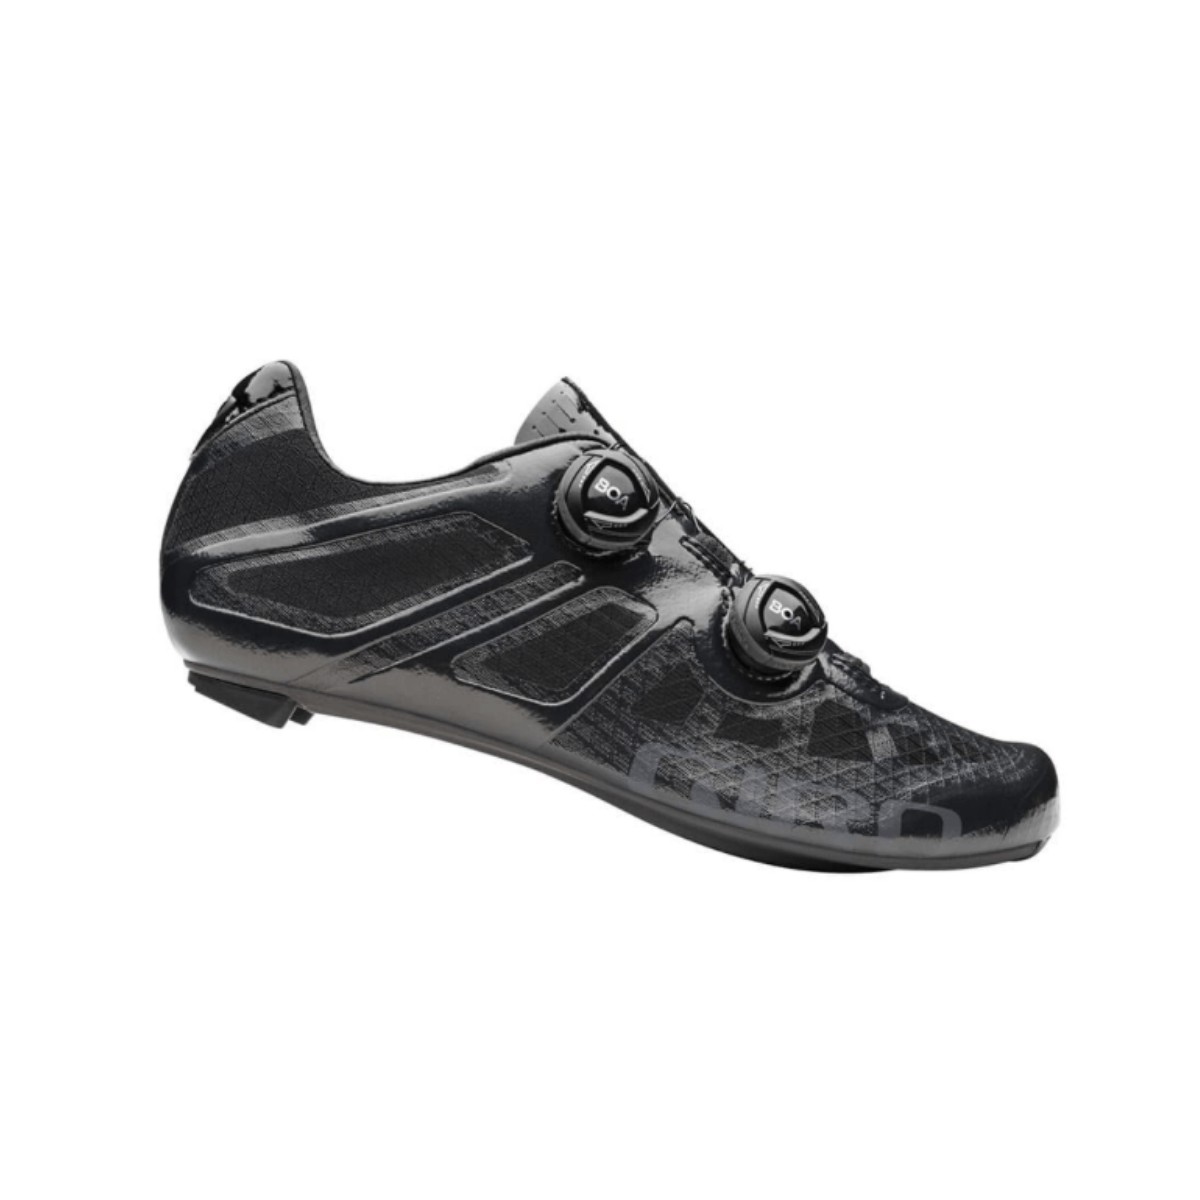 Giro Imperial Schuhe Schwarz, Größe 43 - EUR